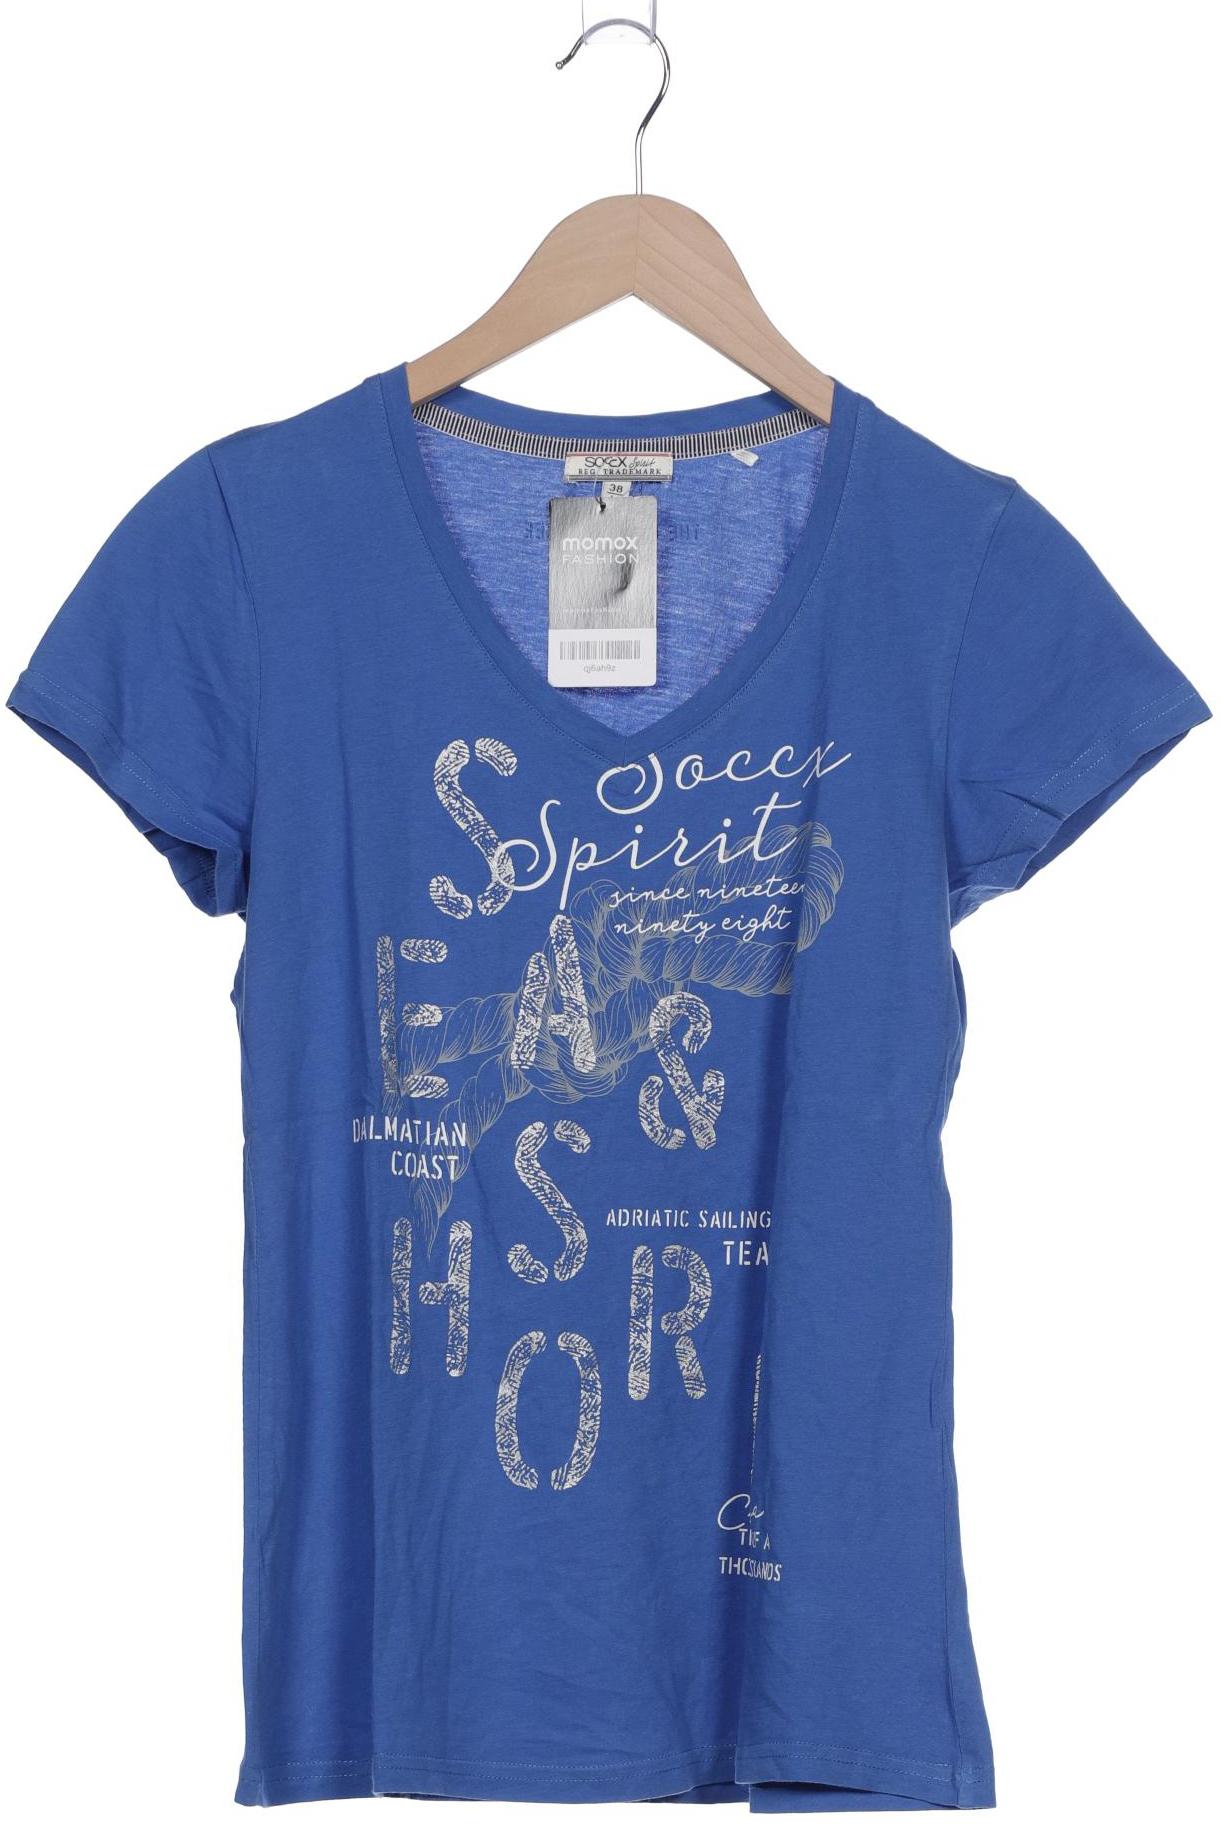 Soccx Damen T-Shirt, blau, Gr. 38 von SOCCX